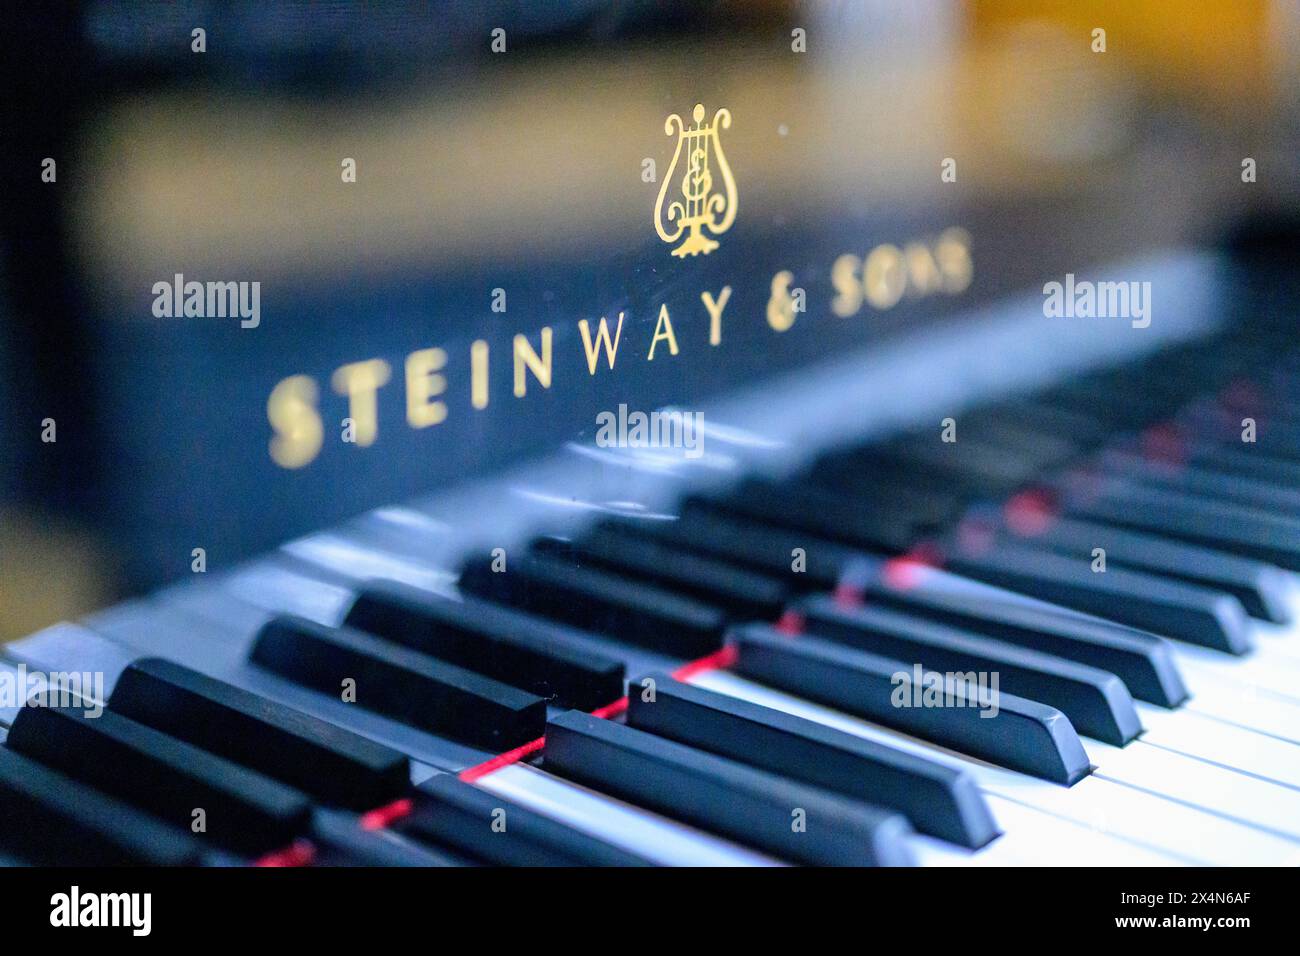 Schwarz-weiße Tasten eines Steinway & Sons Klaviers in scharfer Schärfe. Stockfoto